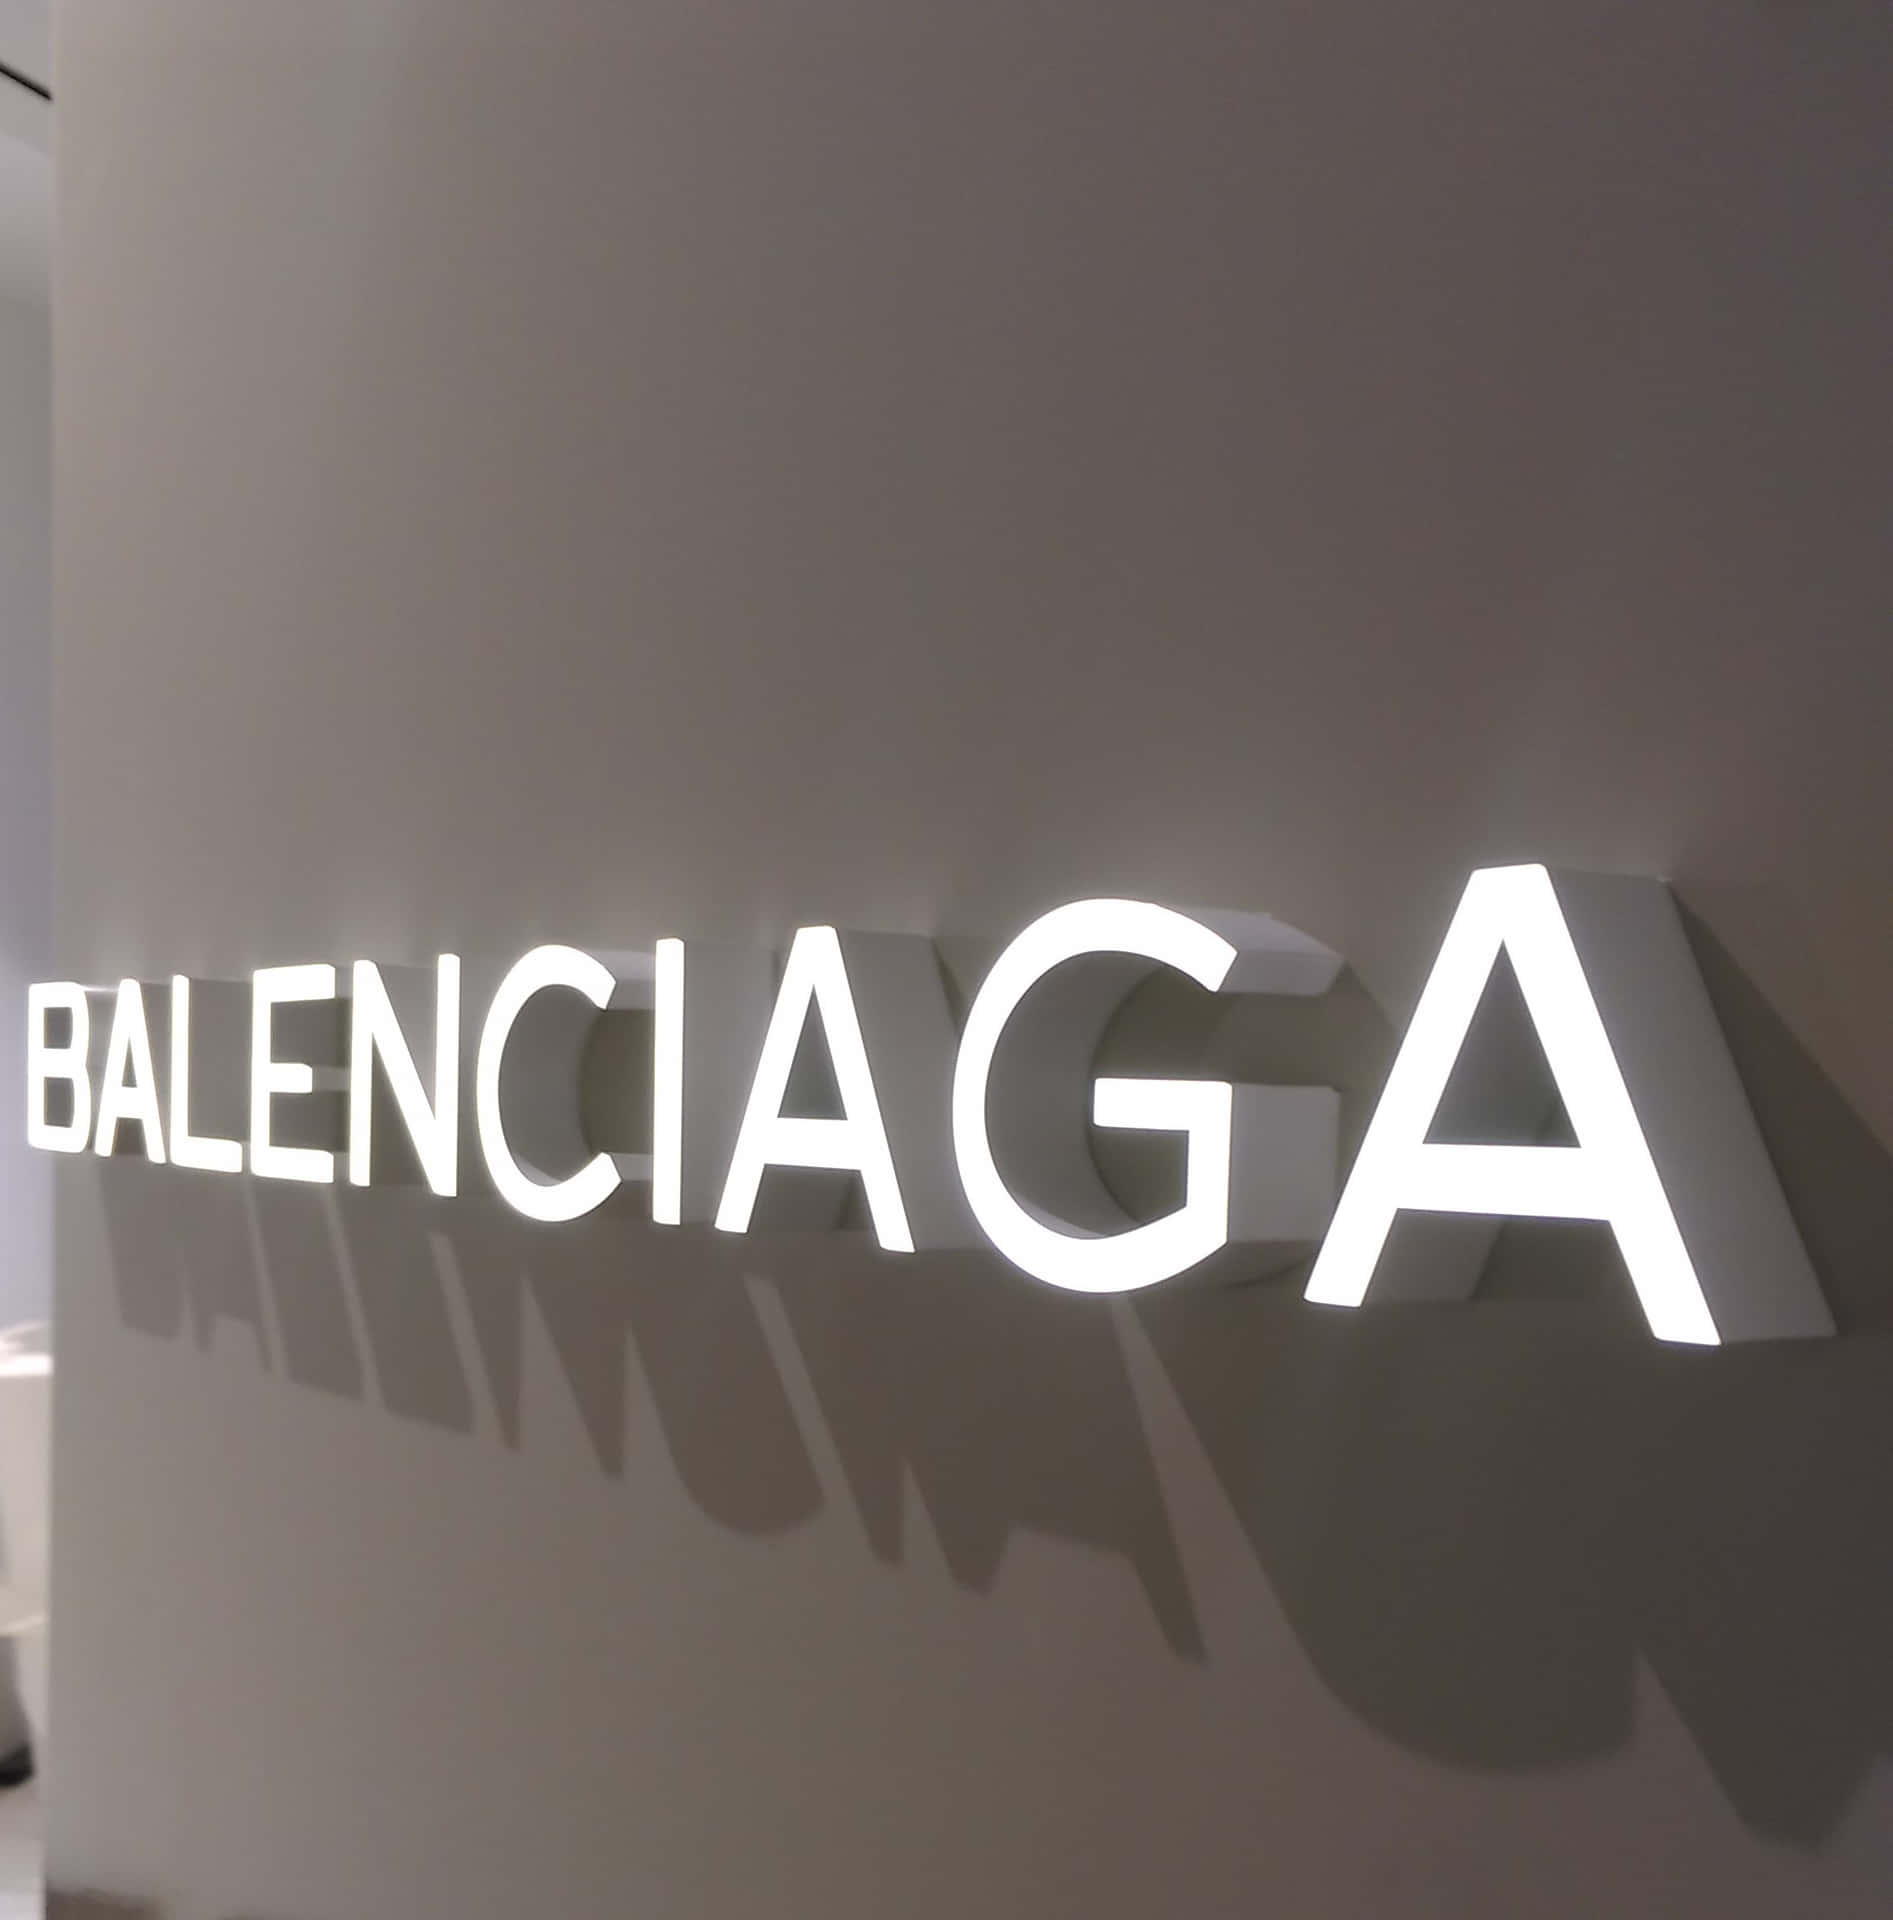 Ready To Make An Impression? Check Out Balenciaga’s Collection